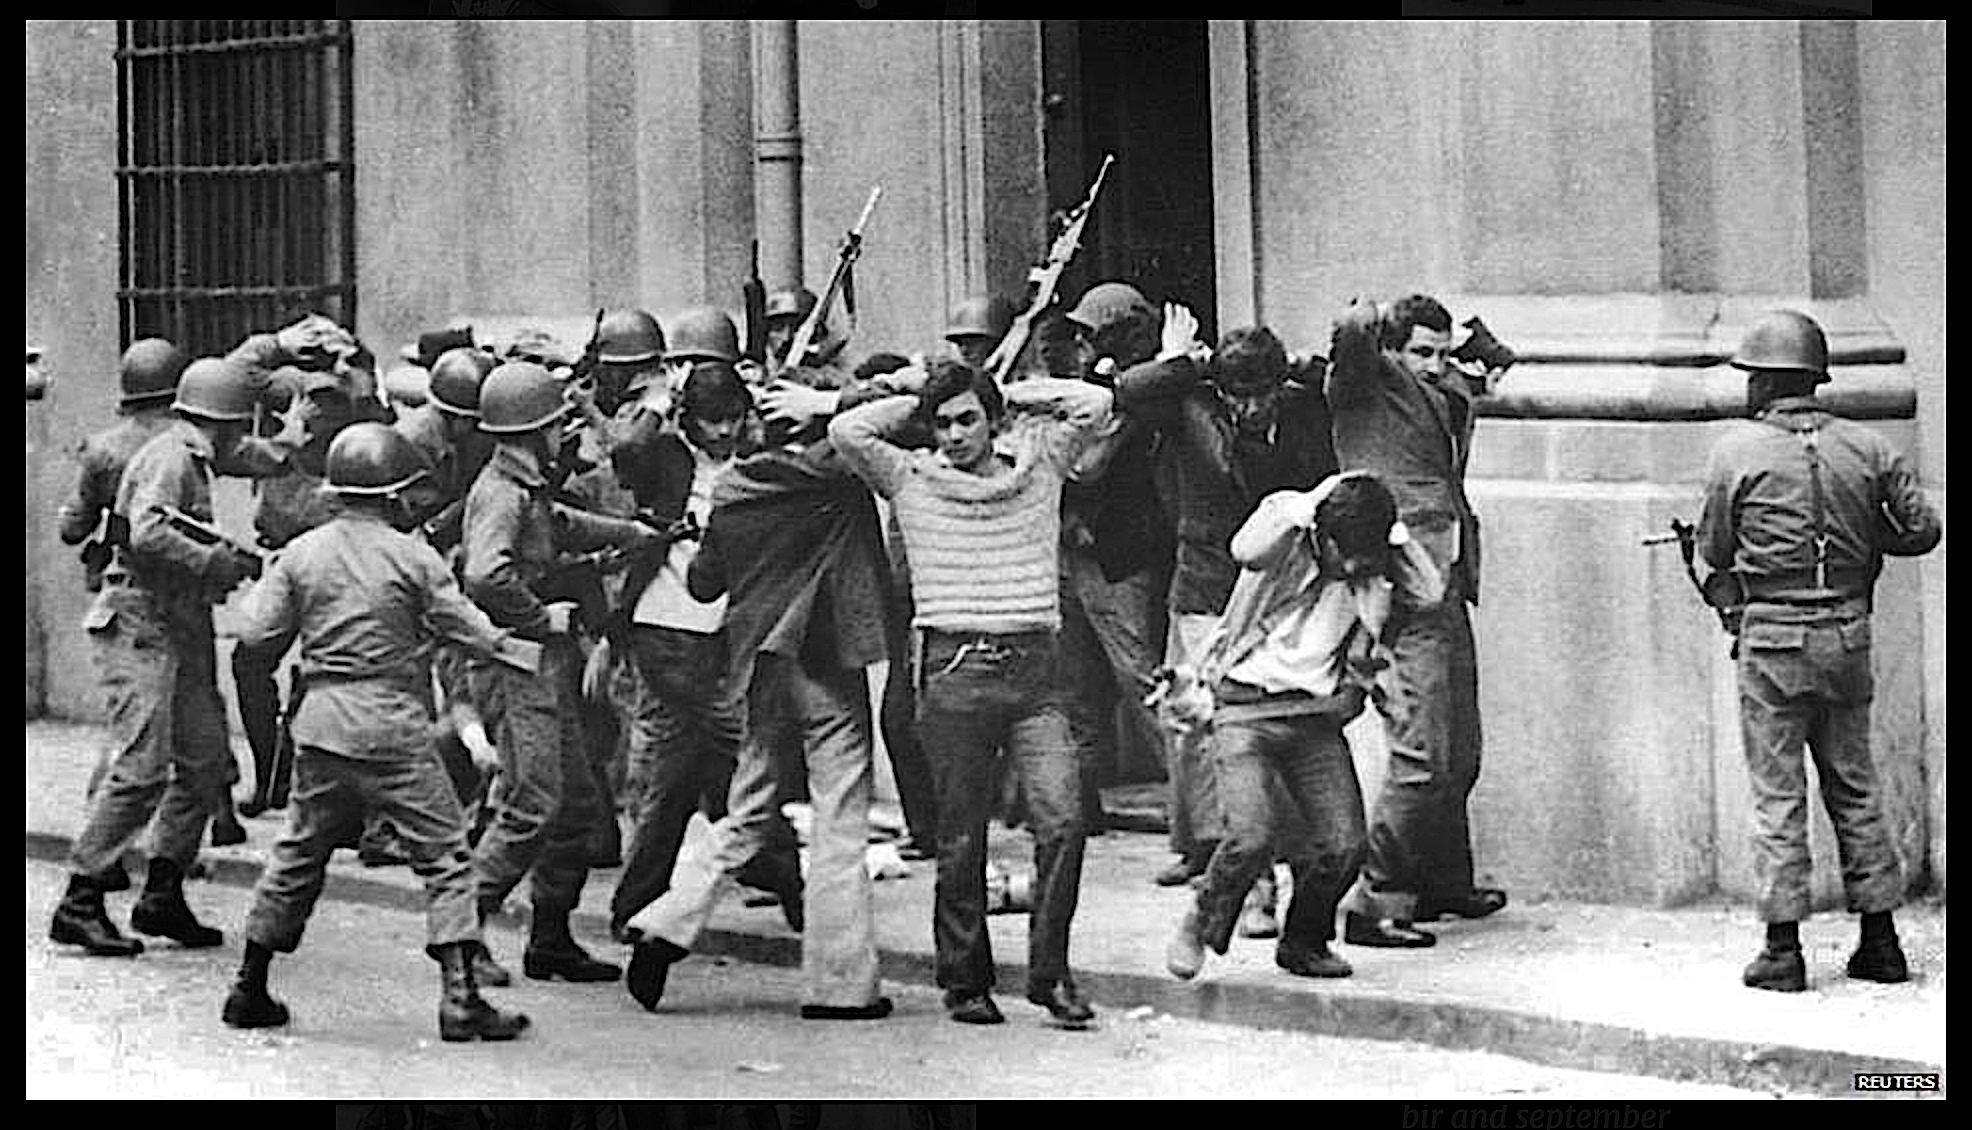 Захват власти военными. Переворот в Чили в 1973 Пиночет. Переворот в Чили 1973 Альенде. Военный переворот Пиночета в Чили (1973 год). Чили Сальвадор Альенде.